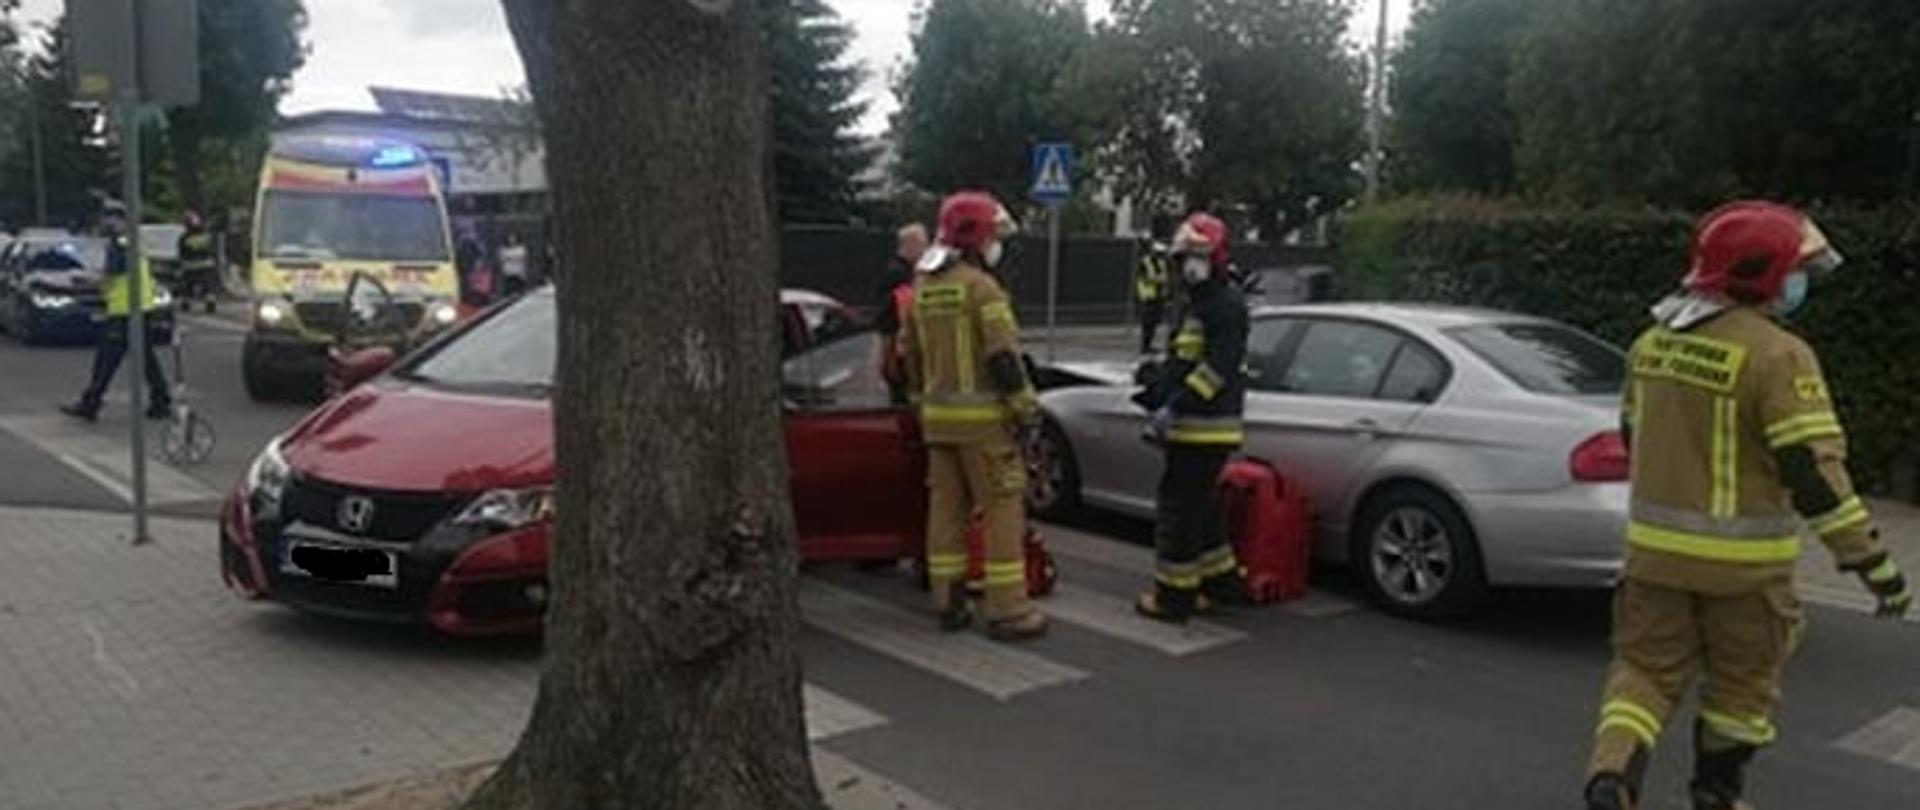 Strażacy udzielają pomocy podczas wypadku samochodowego